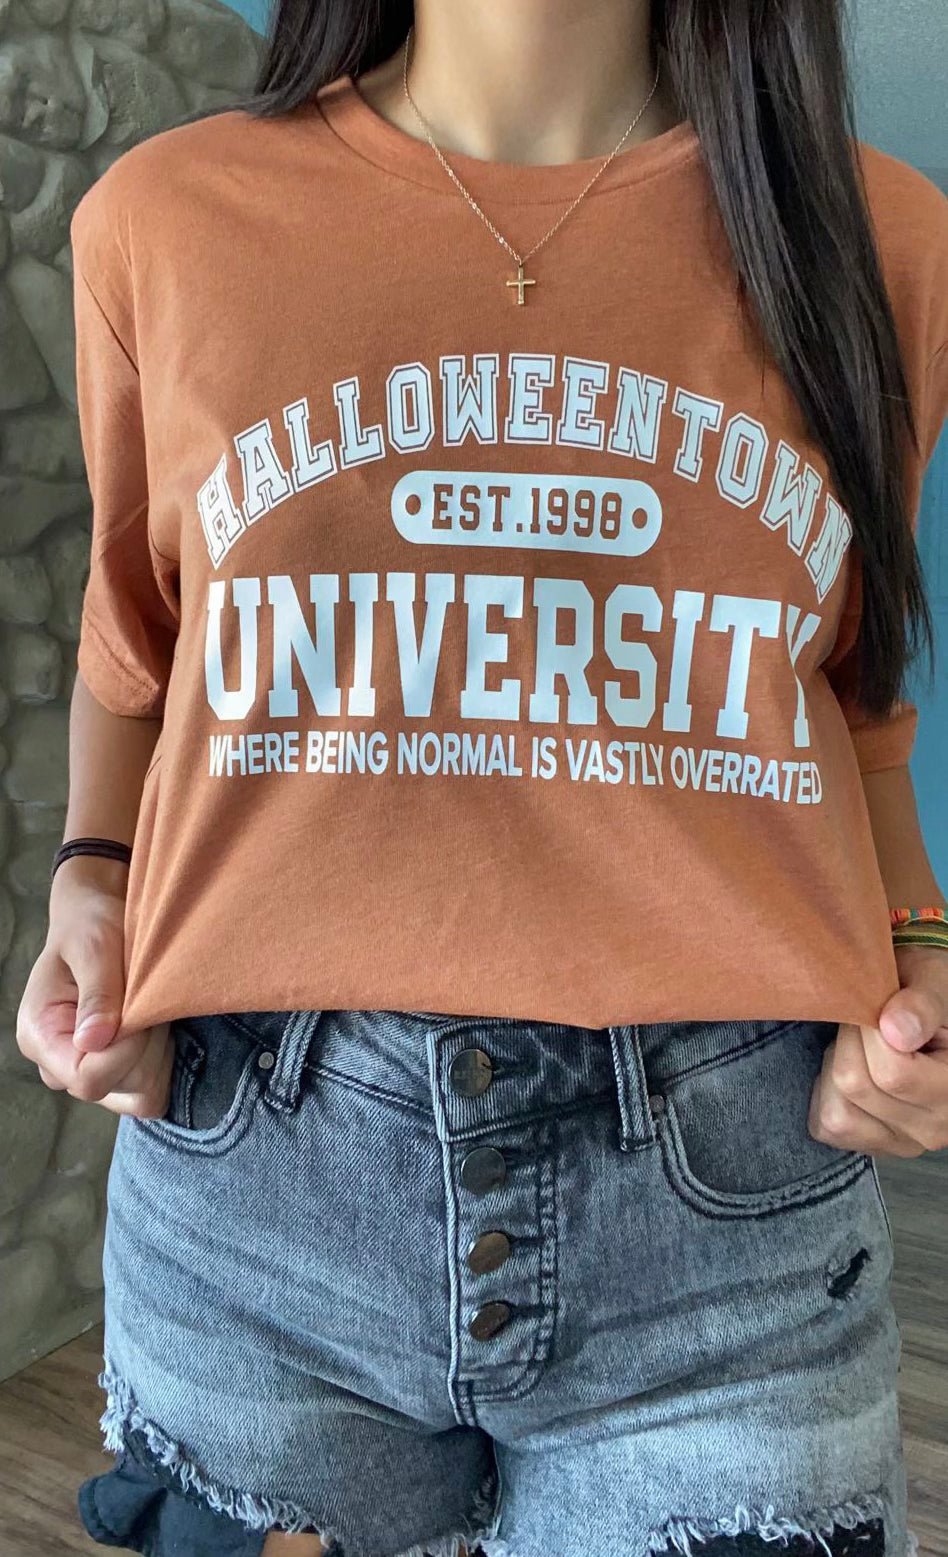 Halloweentown University tee